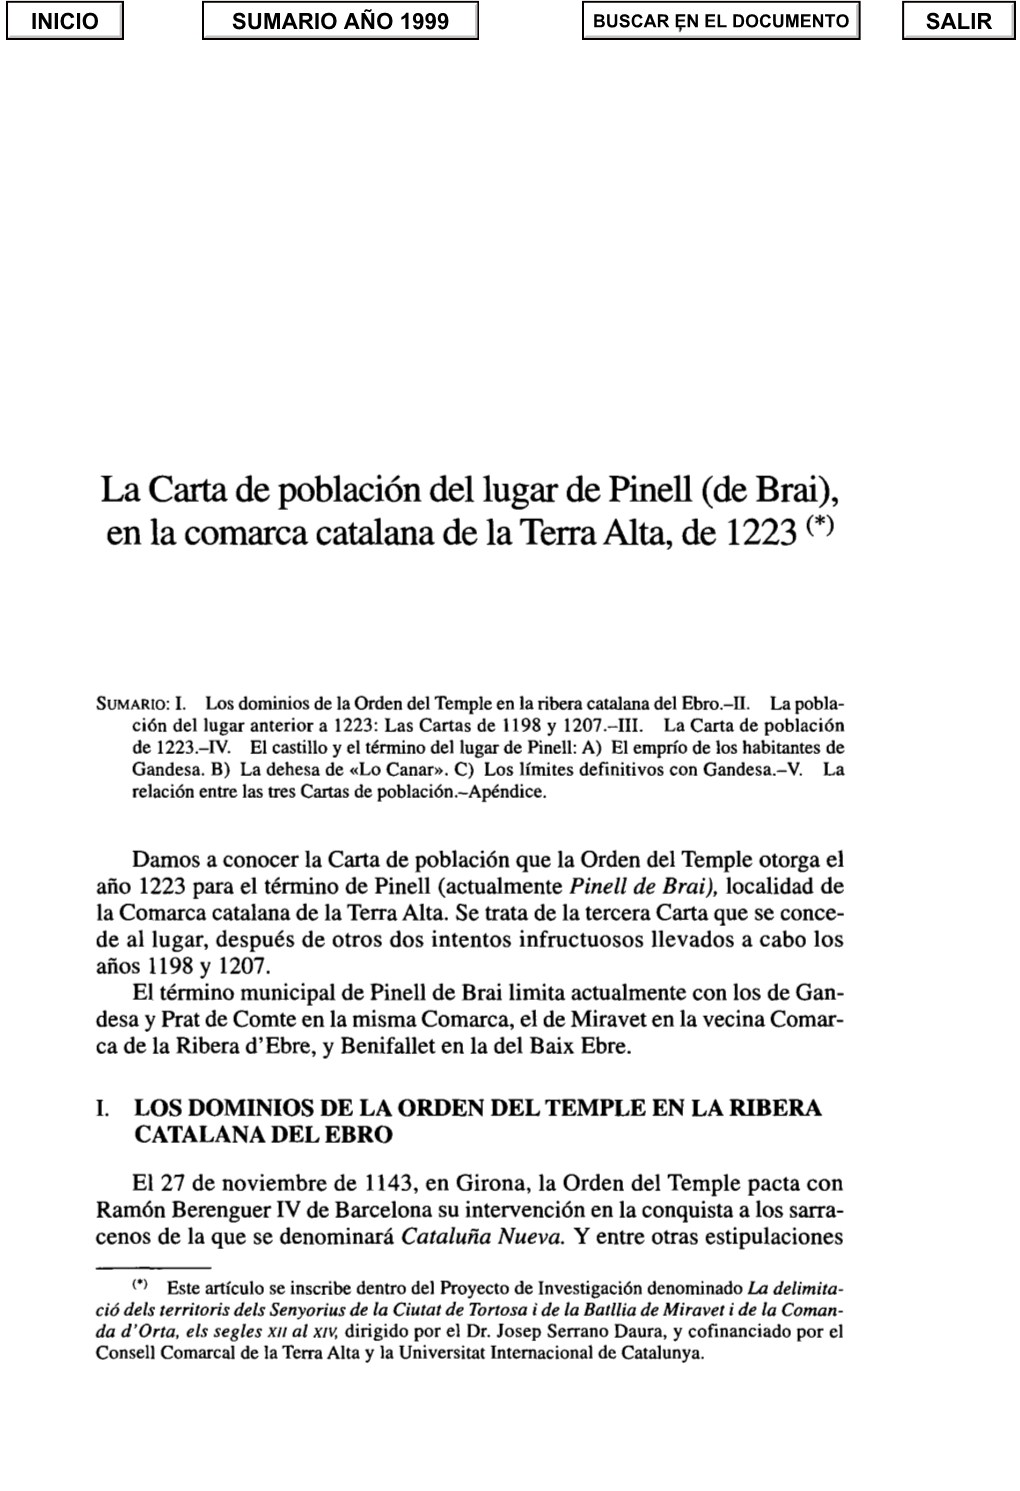 La Carta De Población Del Lugar De Pinell (De Brai)